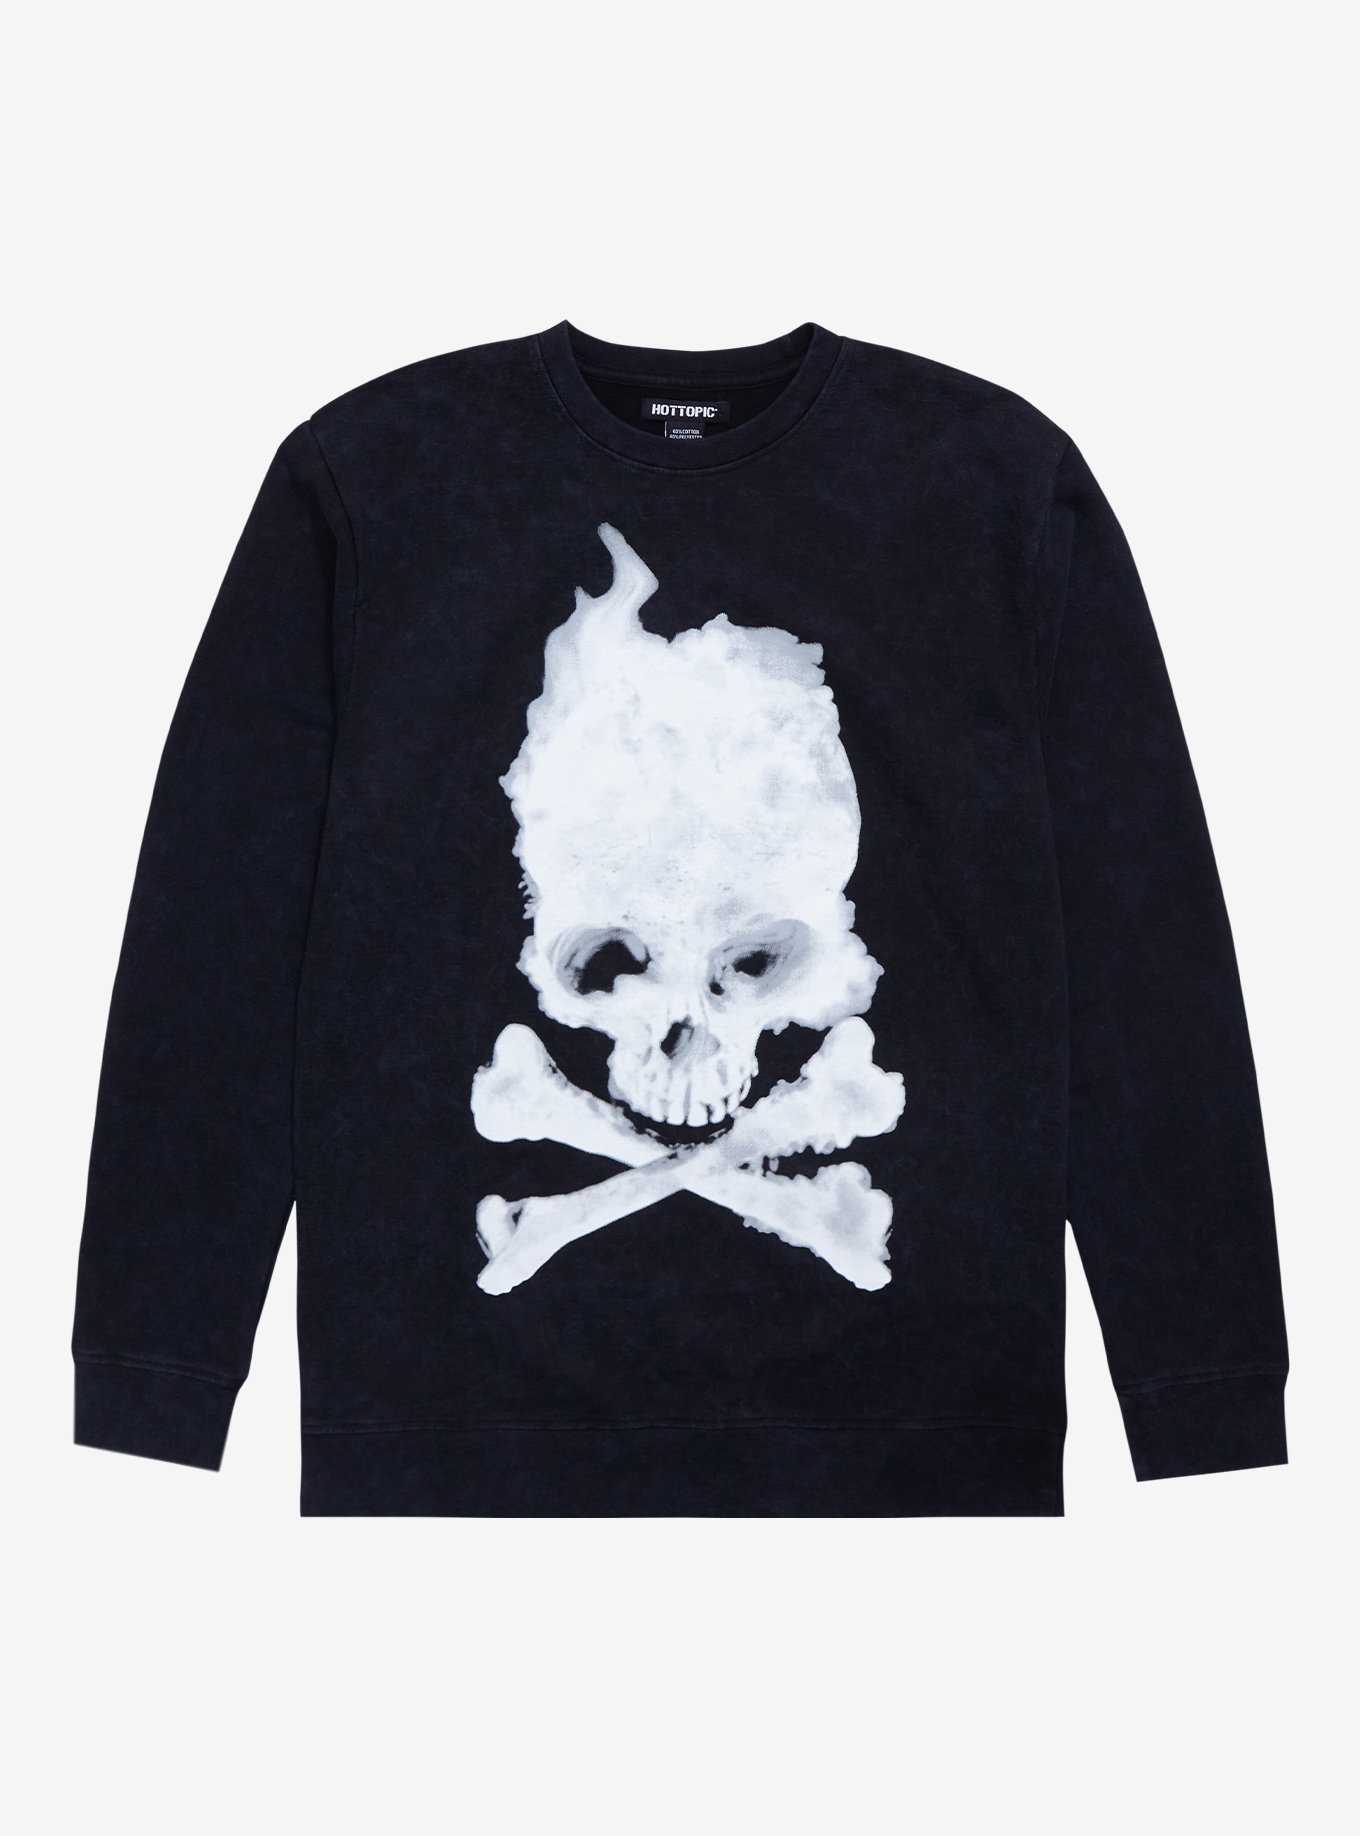 Blurry Skull & Crossbones Crewneck Sweater, , hi-res